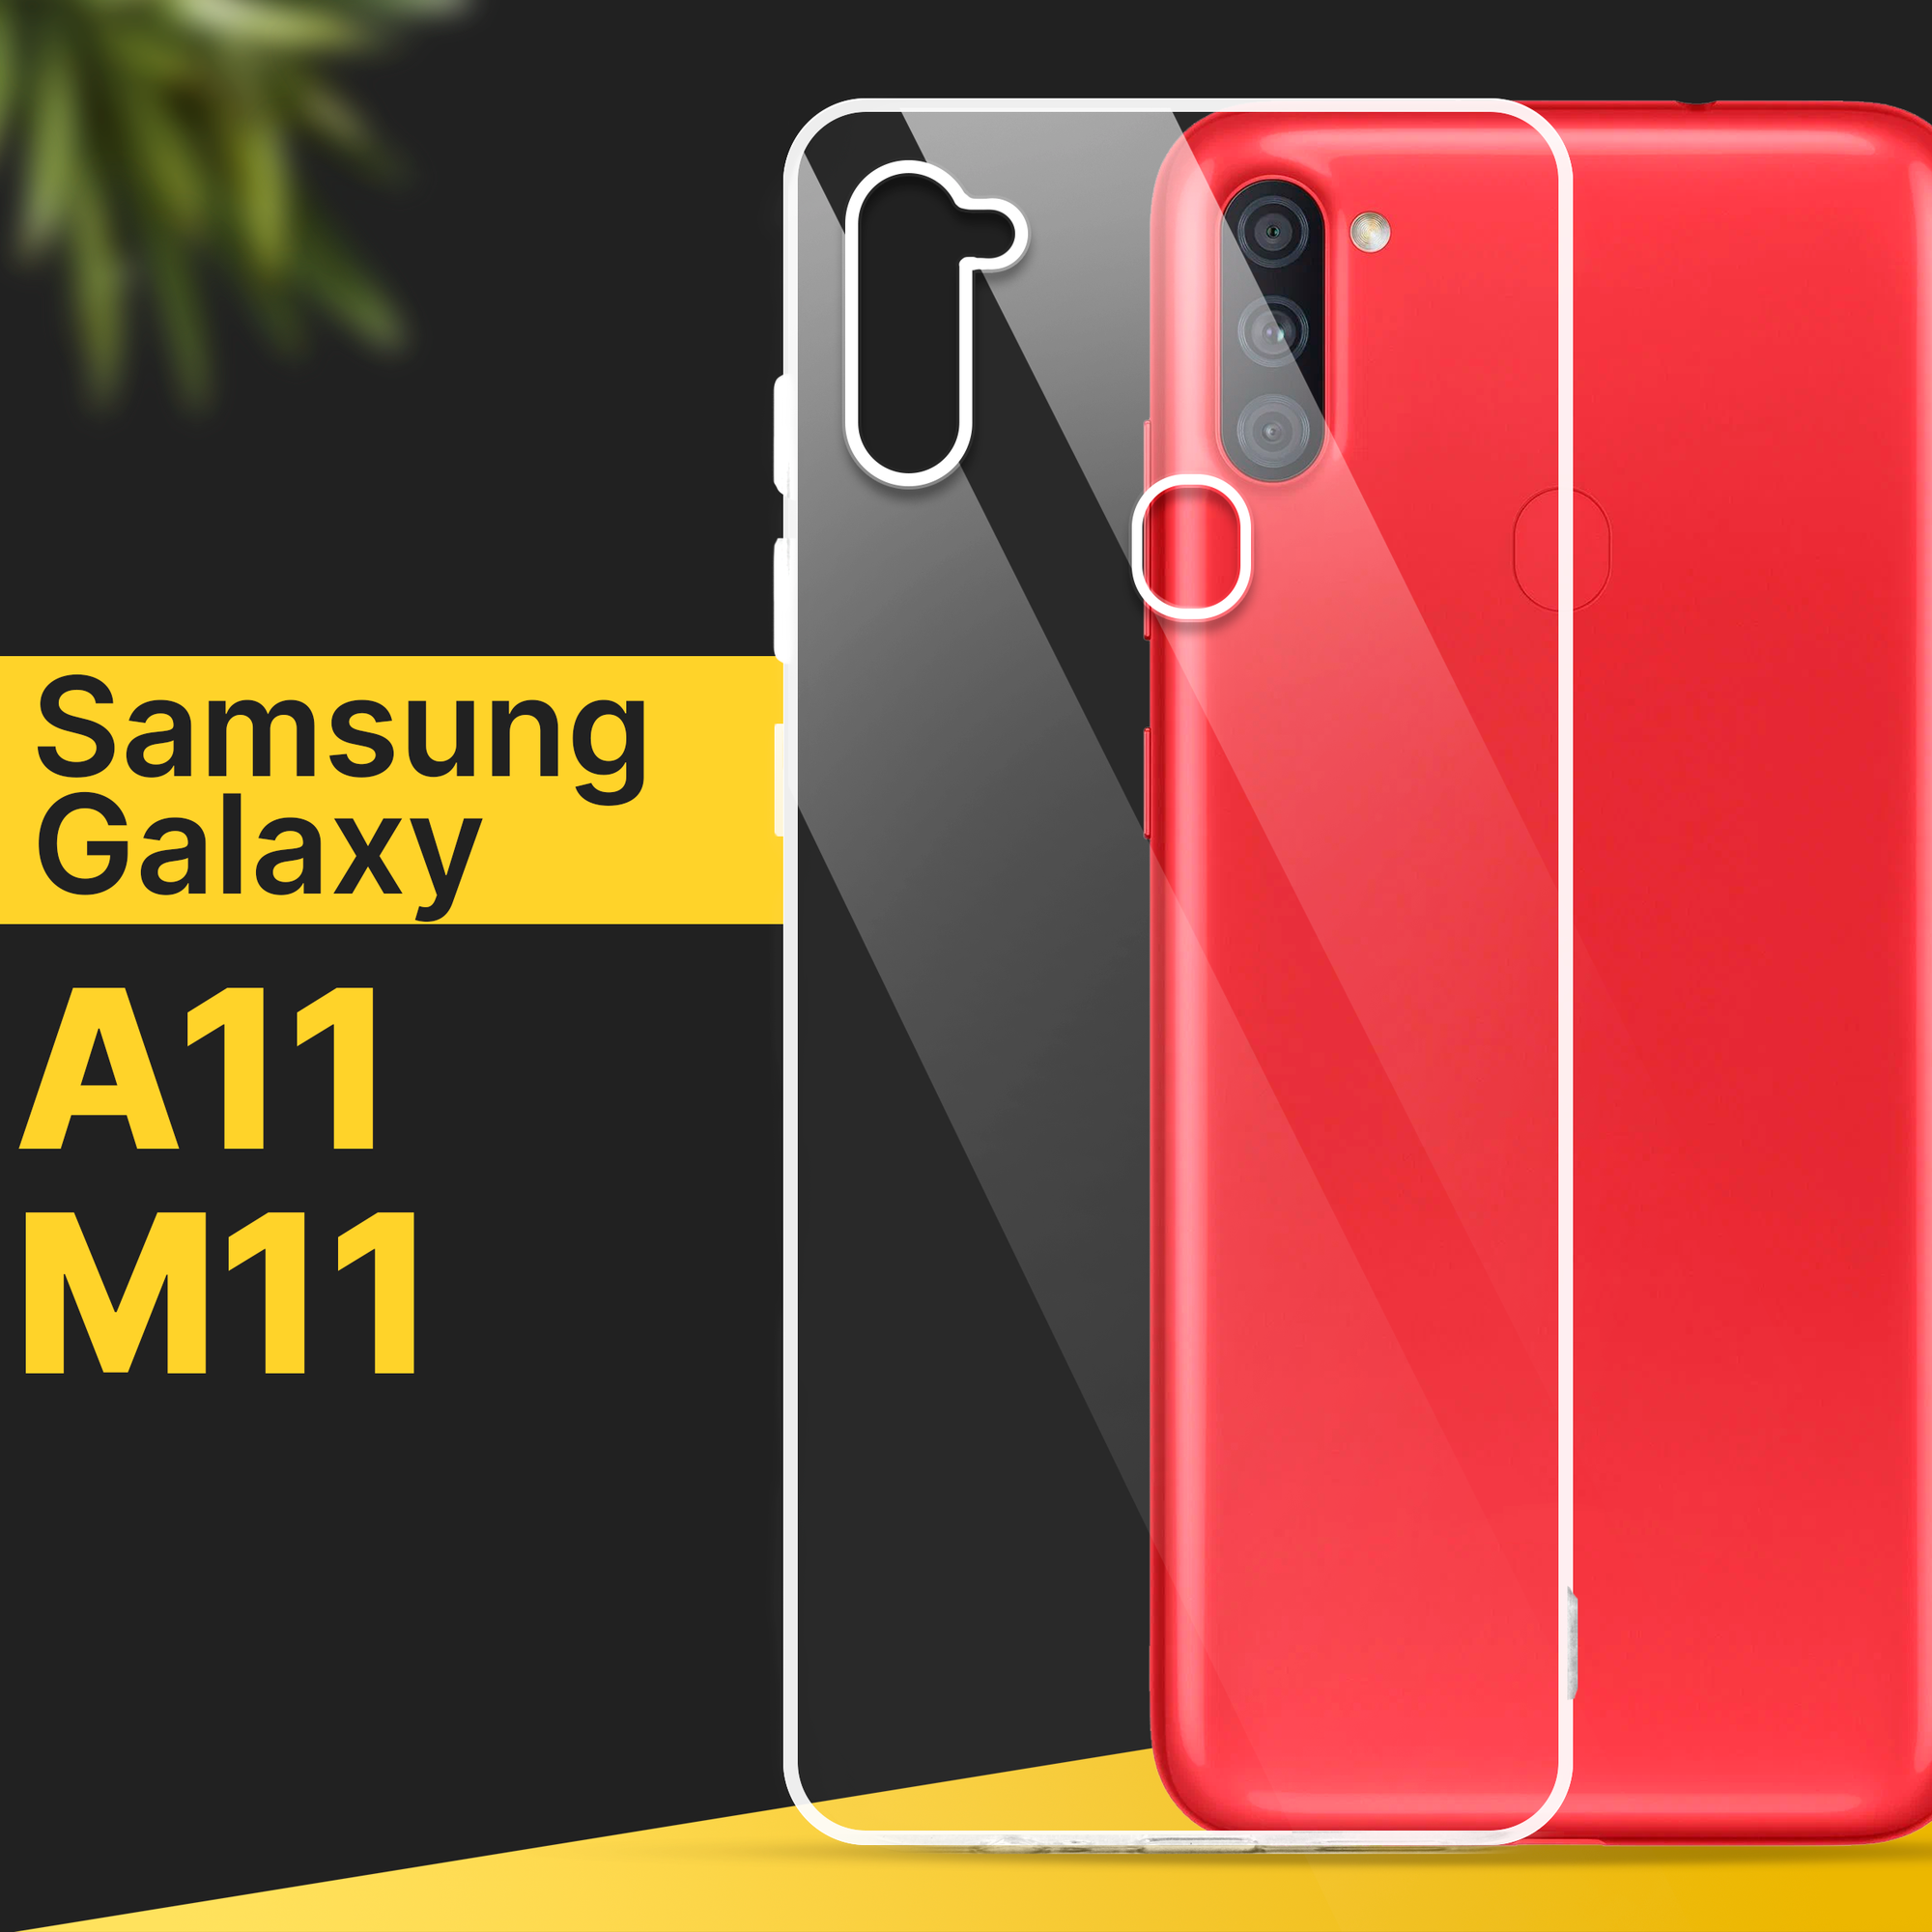 Тонкий силиконовый чехол для смартфона Samsung Galaxy A11 и M11 / Противоударный чехол накладка для телефона Самсунг Галакси А11 и М11 / Прозрачный